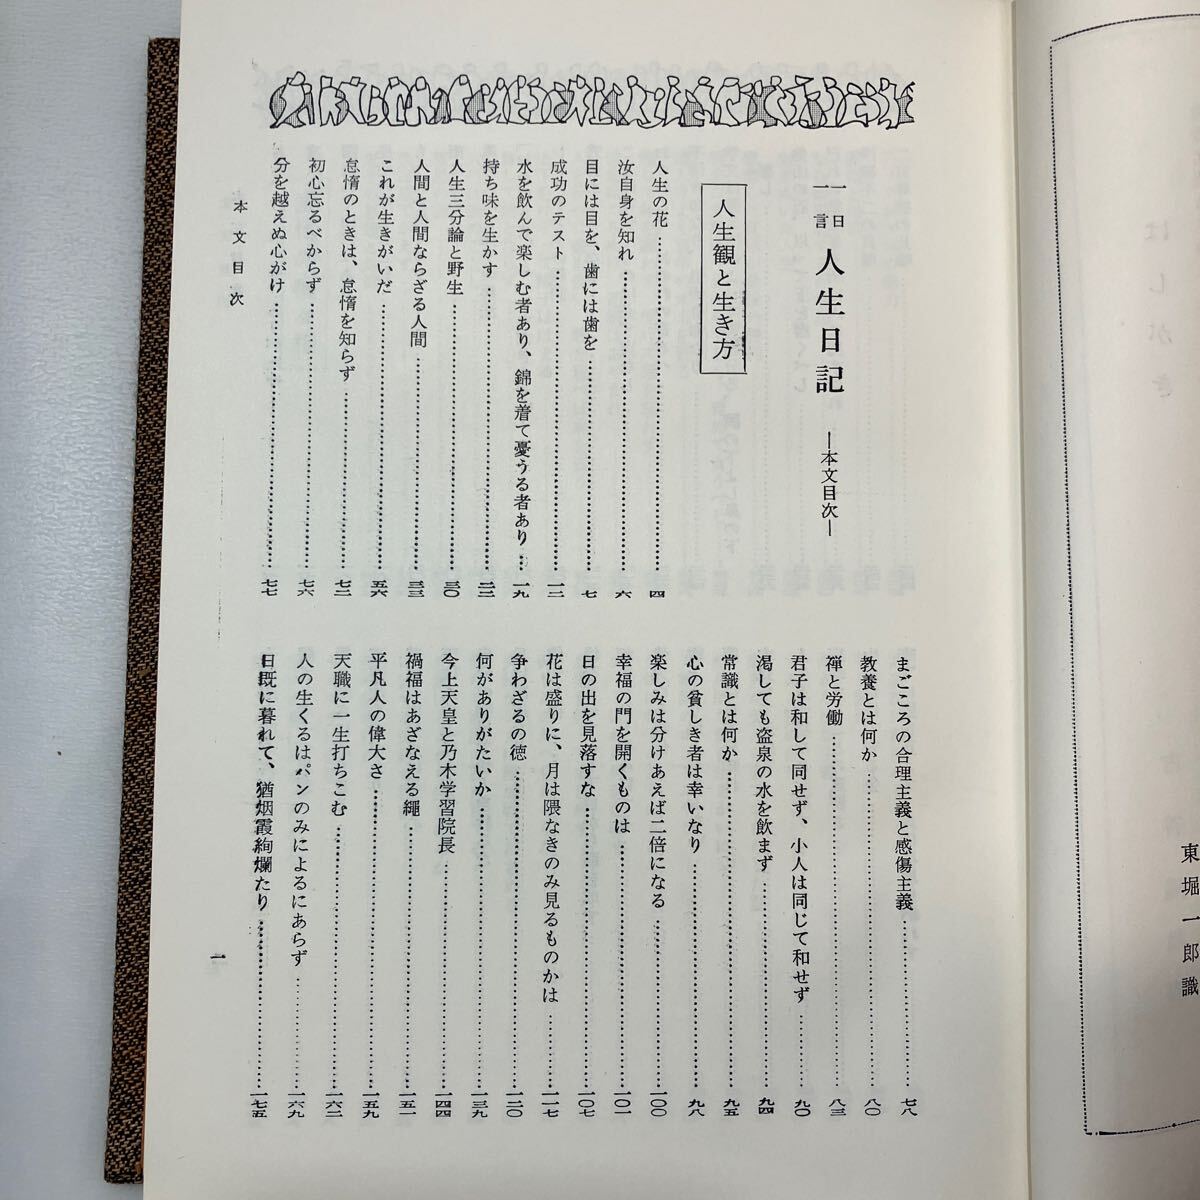 zaa-570♪「一日一言 人生日記」 古谷綱武 (編) 光文書院 (1967/10/10発売）